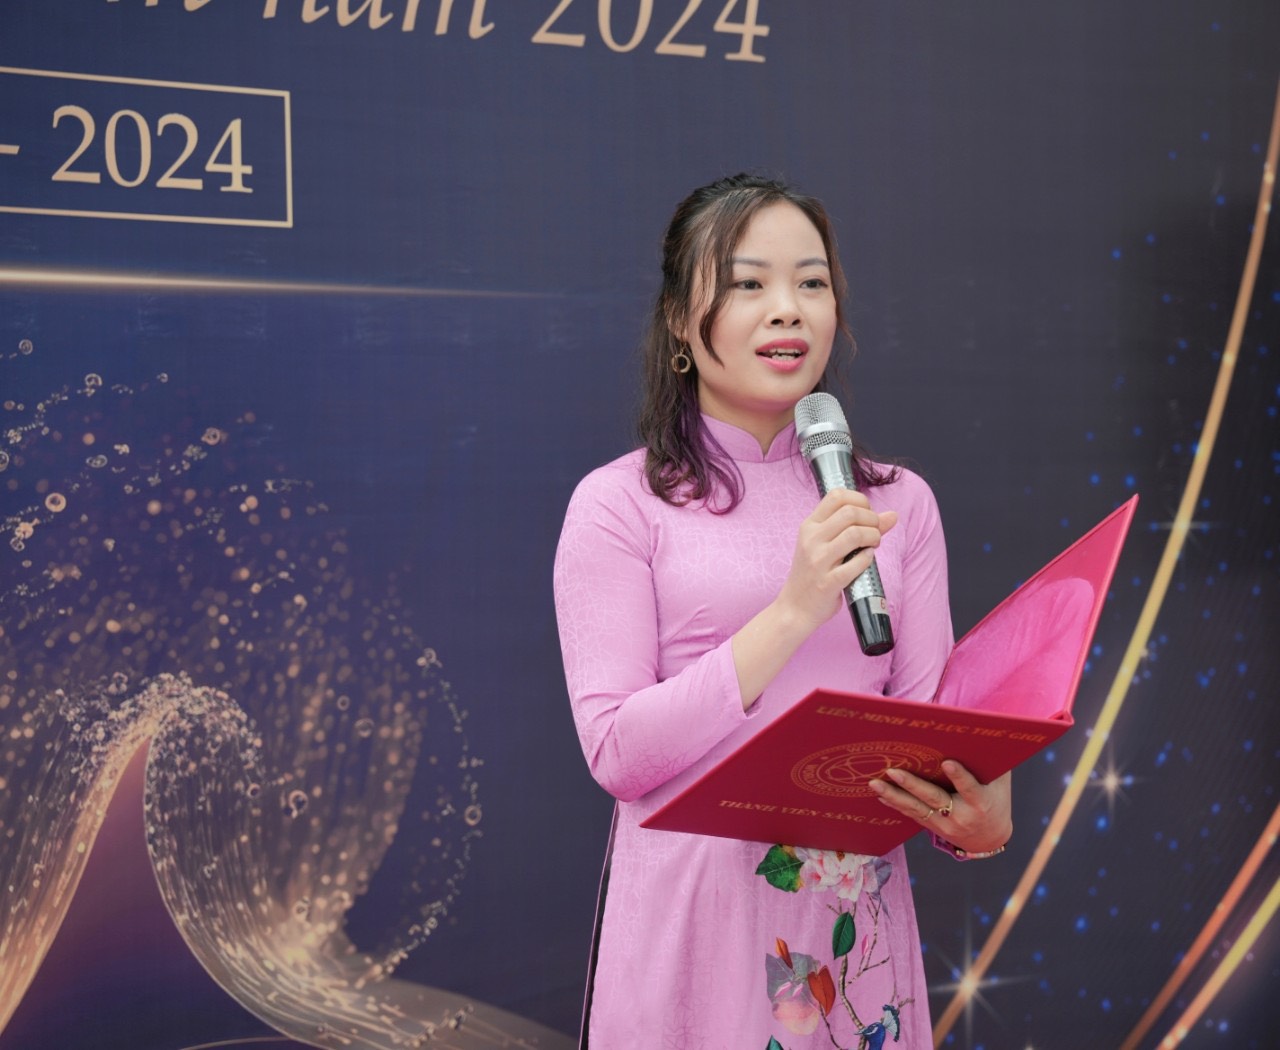 Bà Phạm Thị Vân - Phó trưởng đại diện Miền Bắc Tổ chức Kỷ lục Việt Nam công bố quyết định xác lập Kỷ lục đến đơn vị.